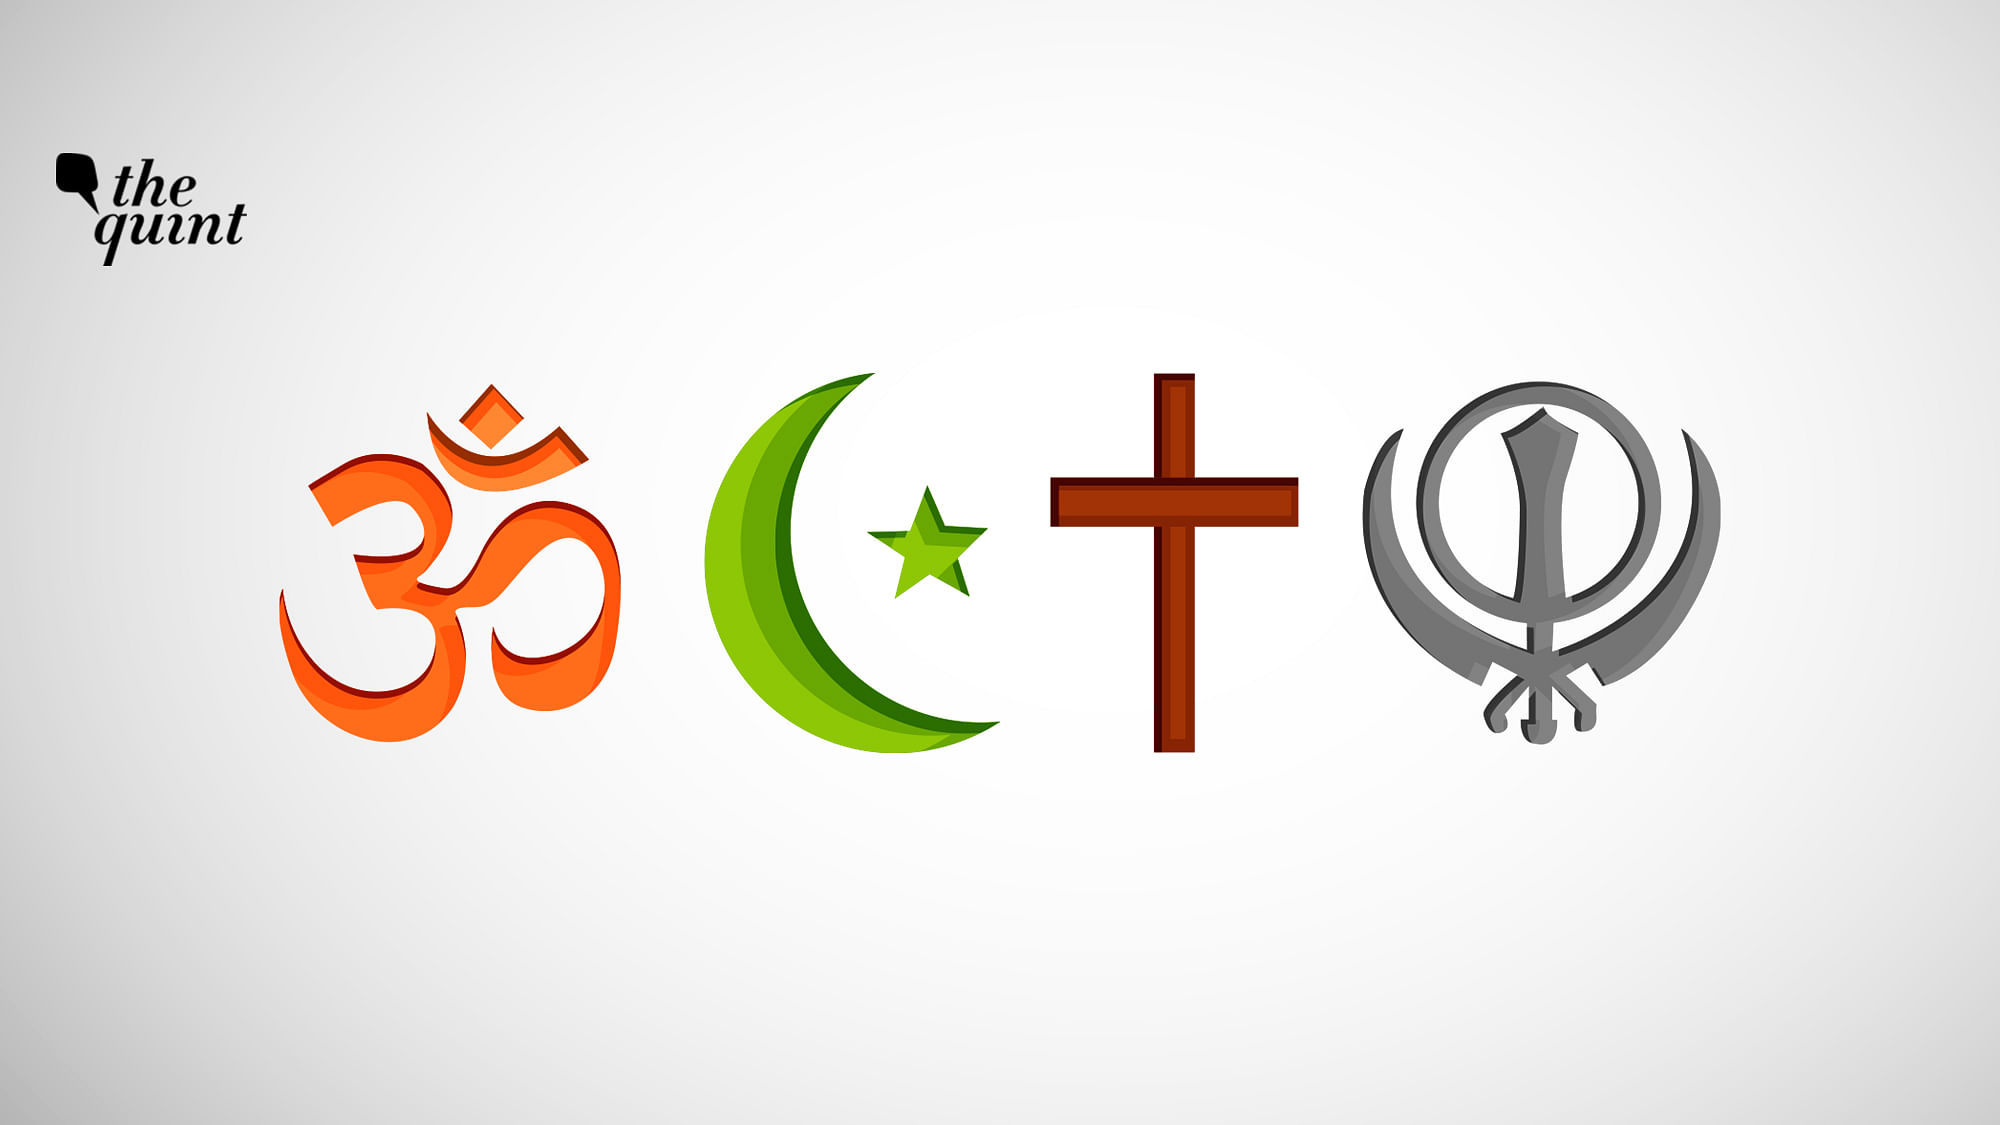 Image representing religious harmony.